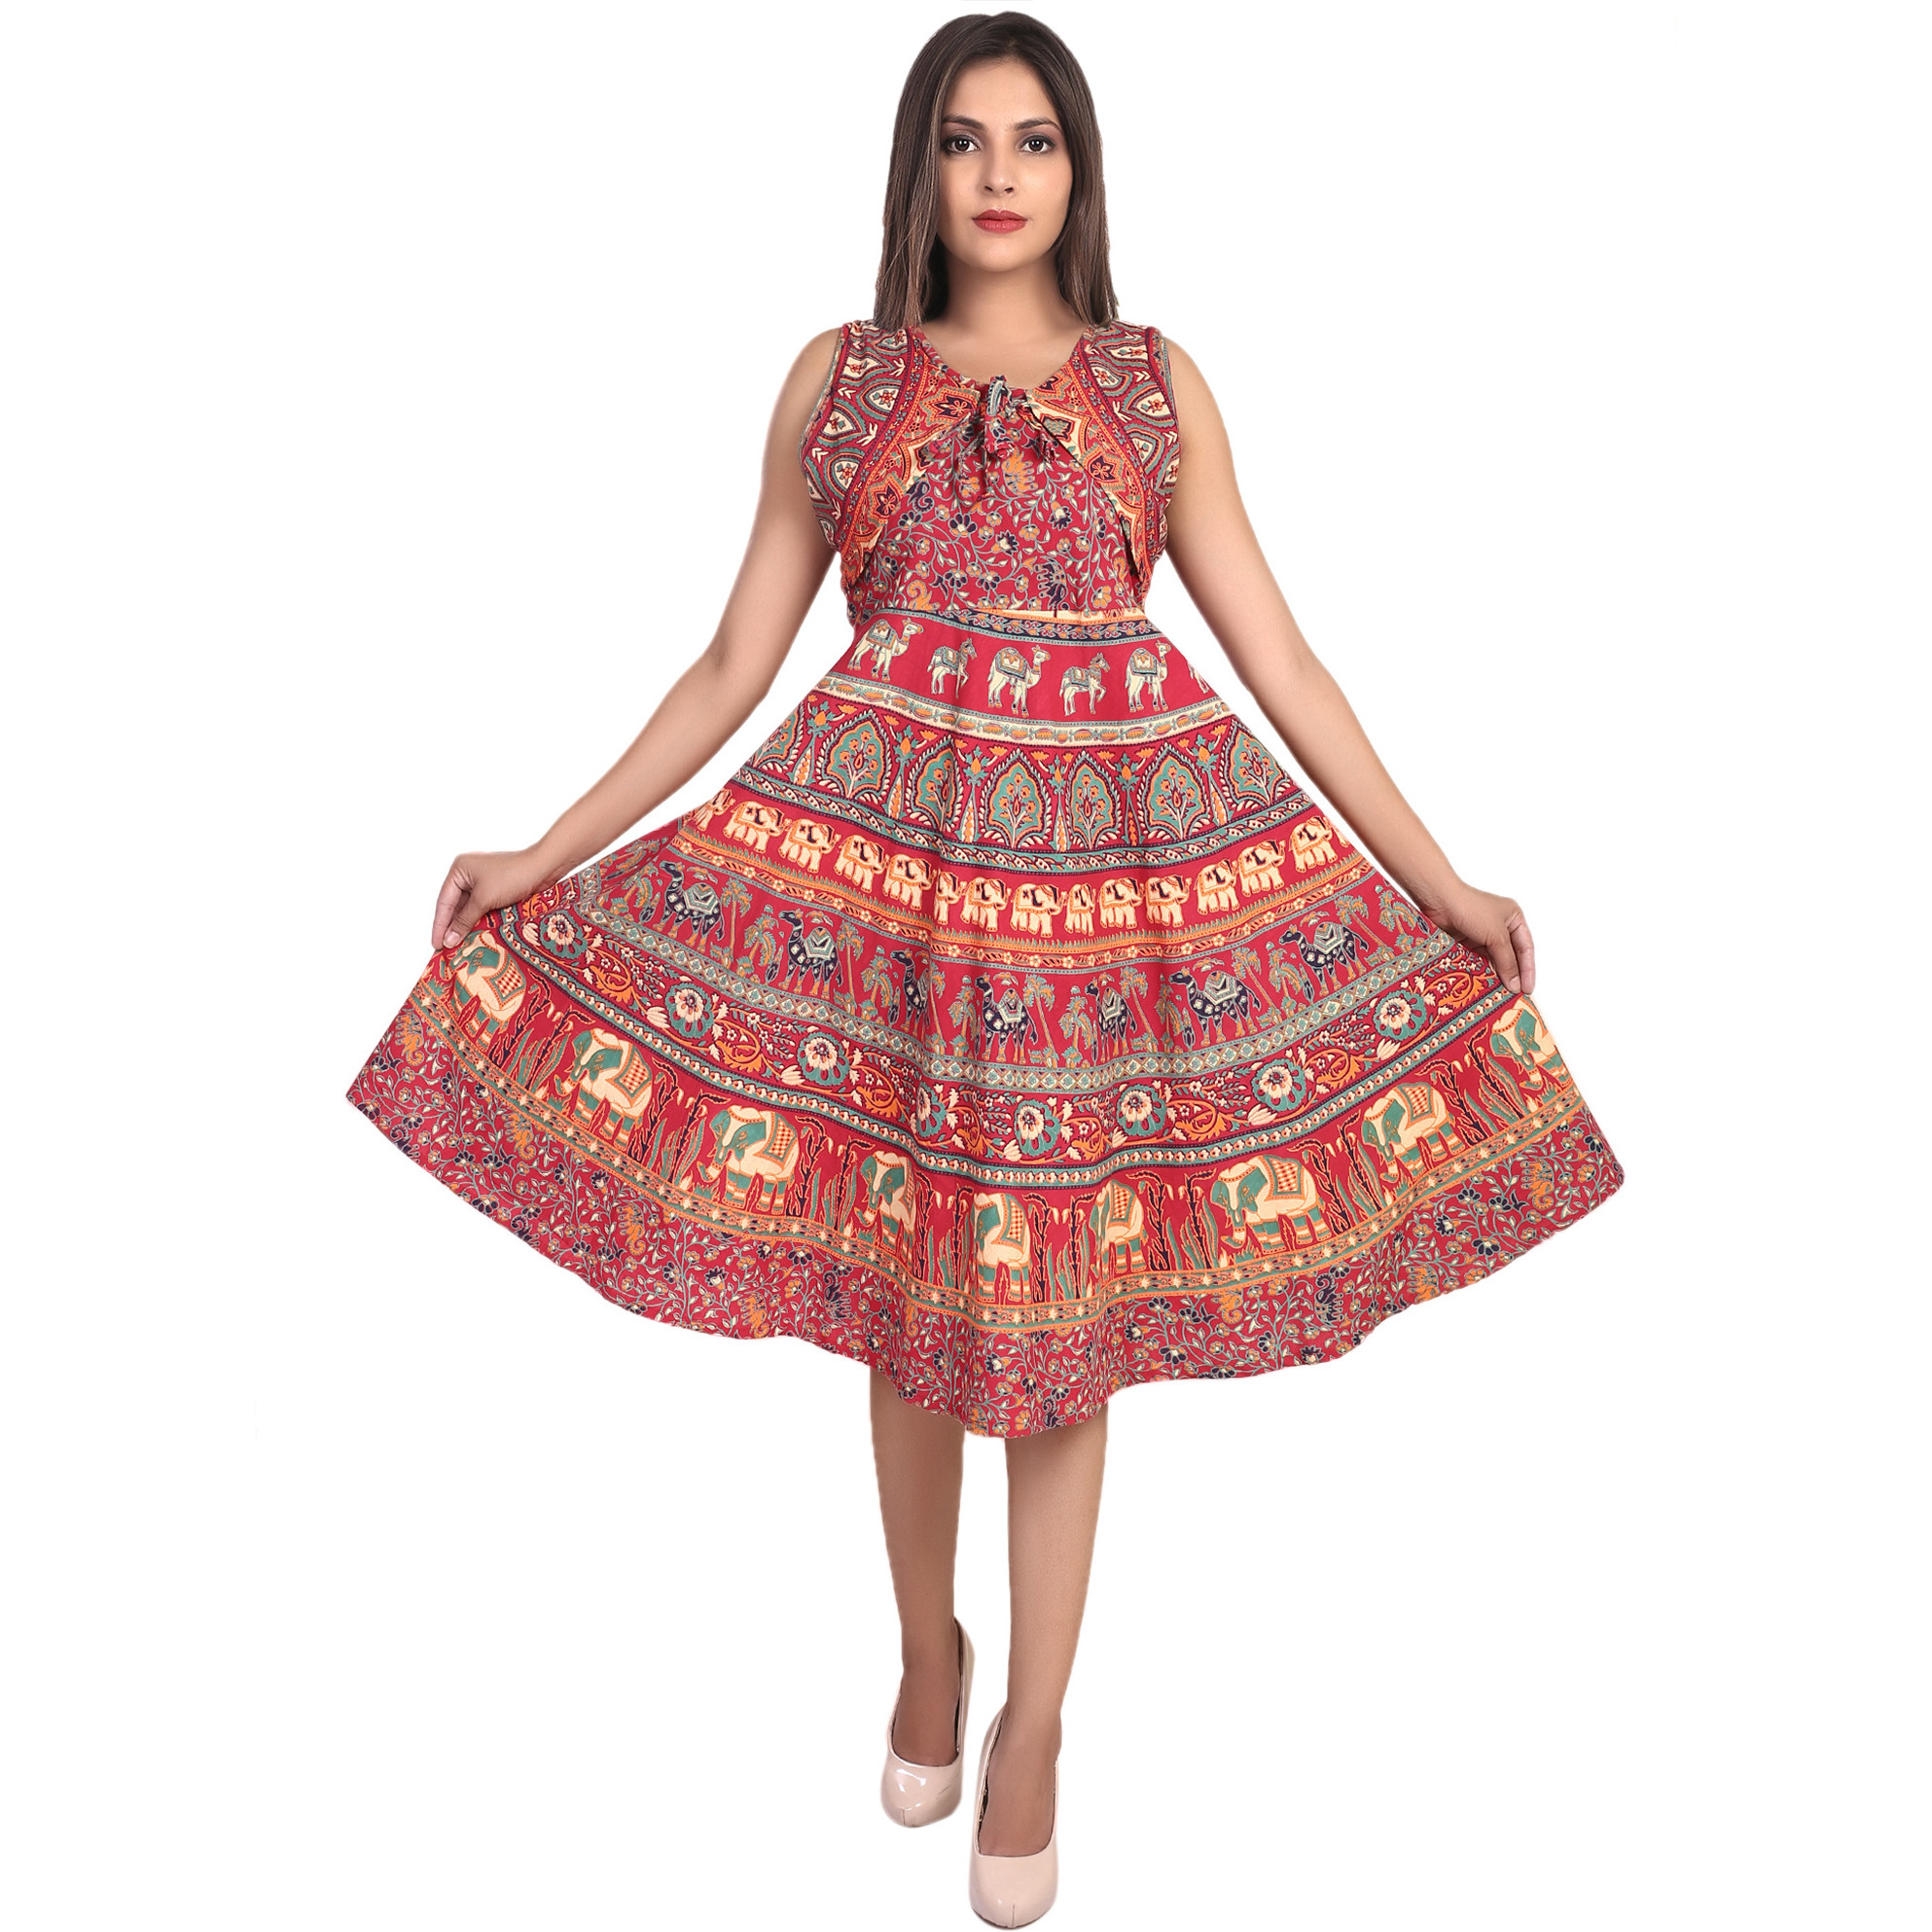 Buy Online Decot Paradise Women's Cotton Knee Lenth Dress - Zifiti.com ...